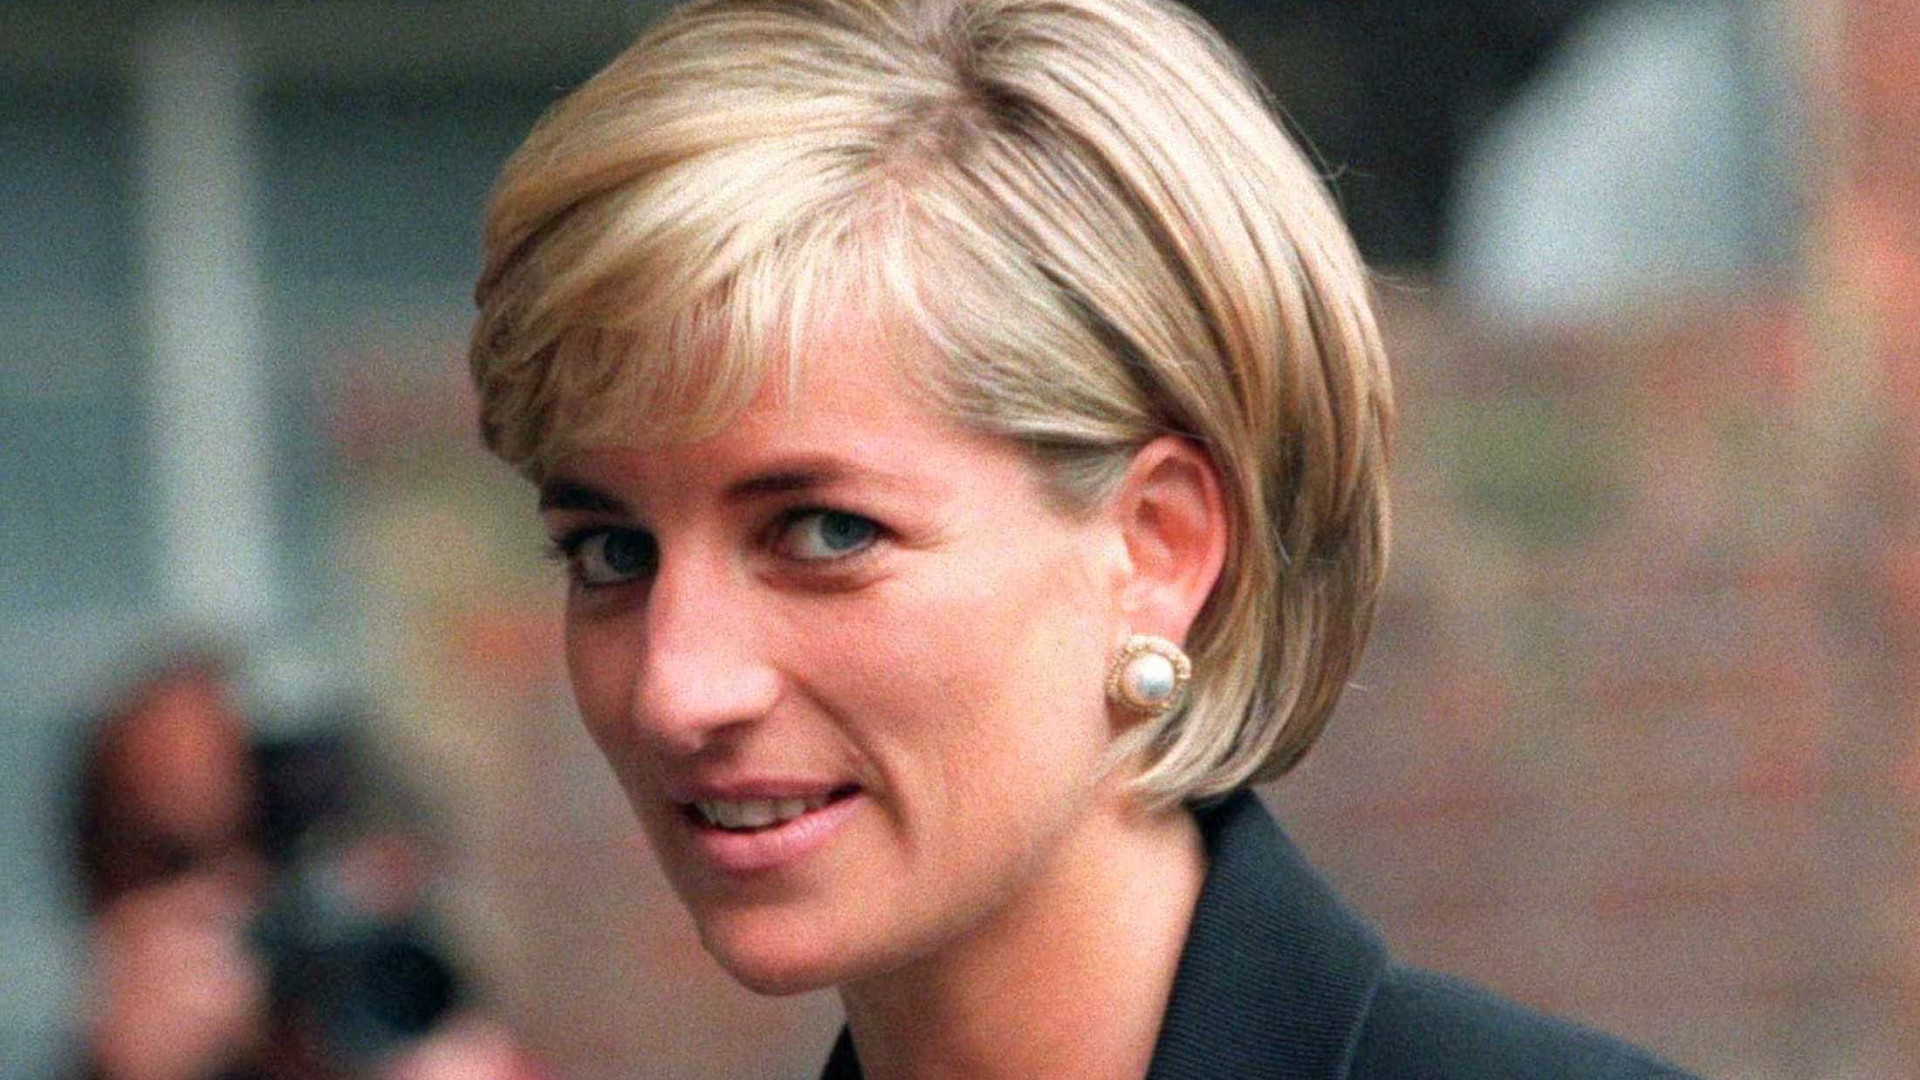 Biografia revela ameaça de morte
feita pela Princesa Diana